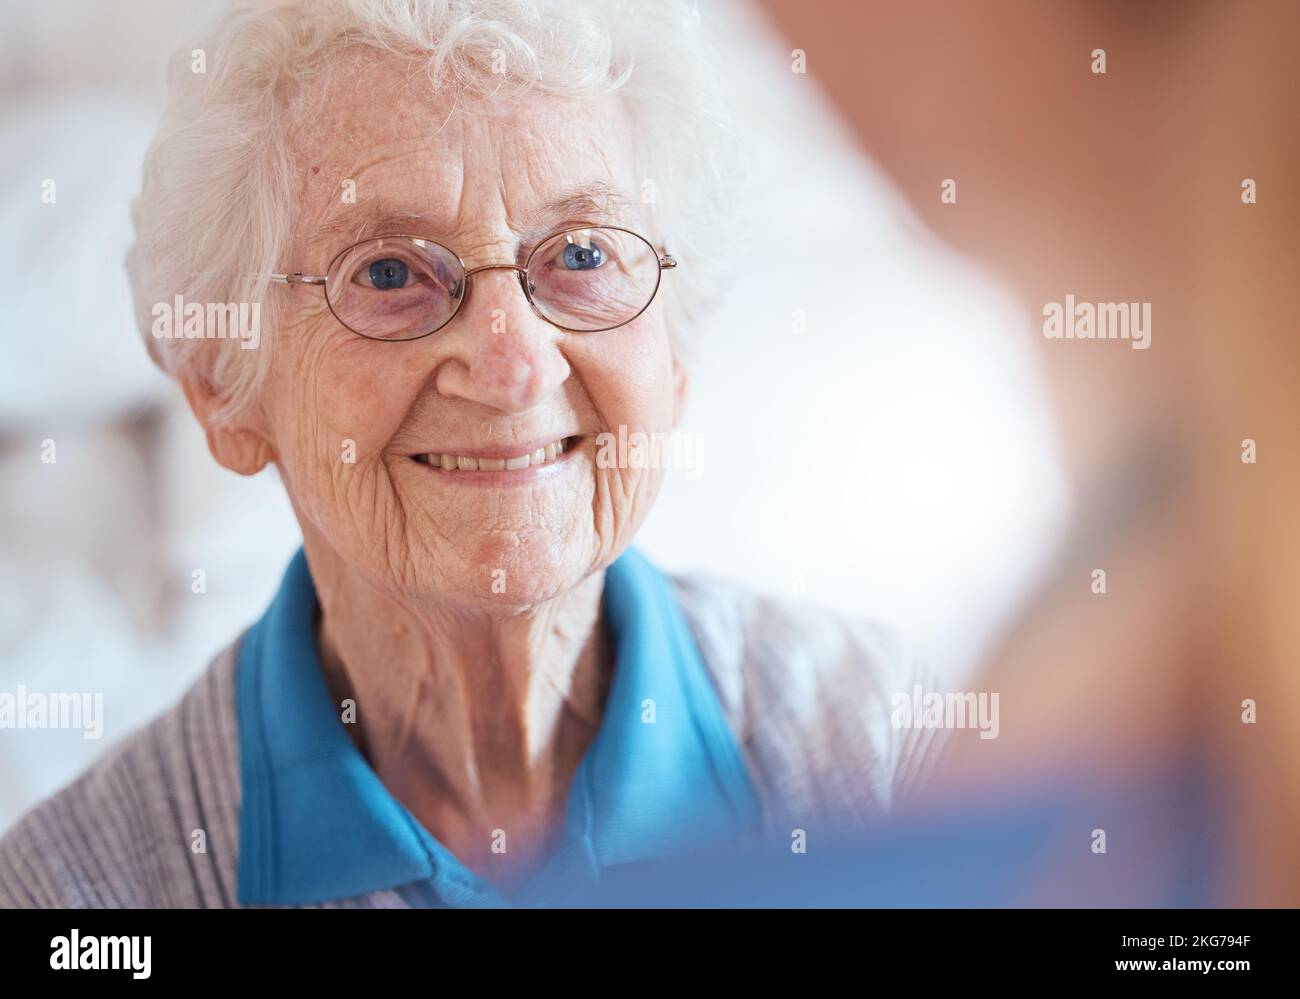 Ältere Frau, Augenoptiker und Sehbrille bei Augenpflegeuntersuchungen, Glaukom-Wellness-Check oder Krankenversicherungsroutine. Lächeln, glücklich oder Senioren im Ruhestand Stockfoto